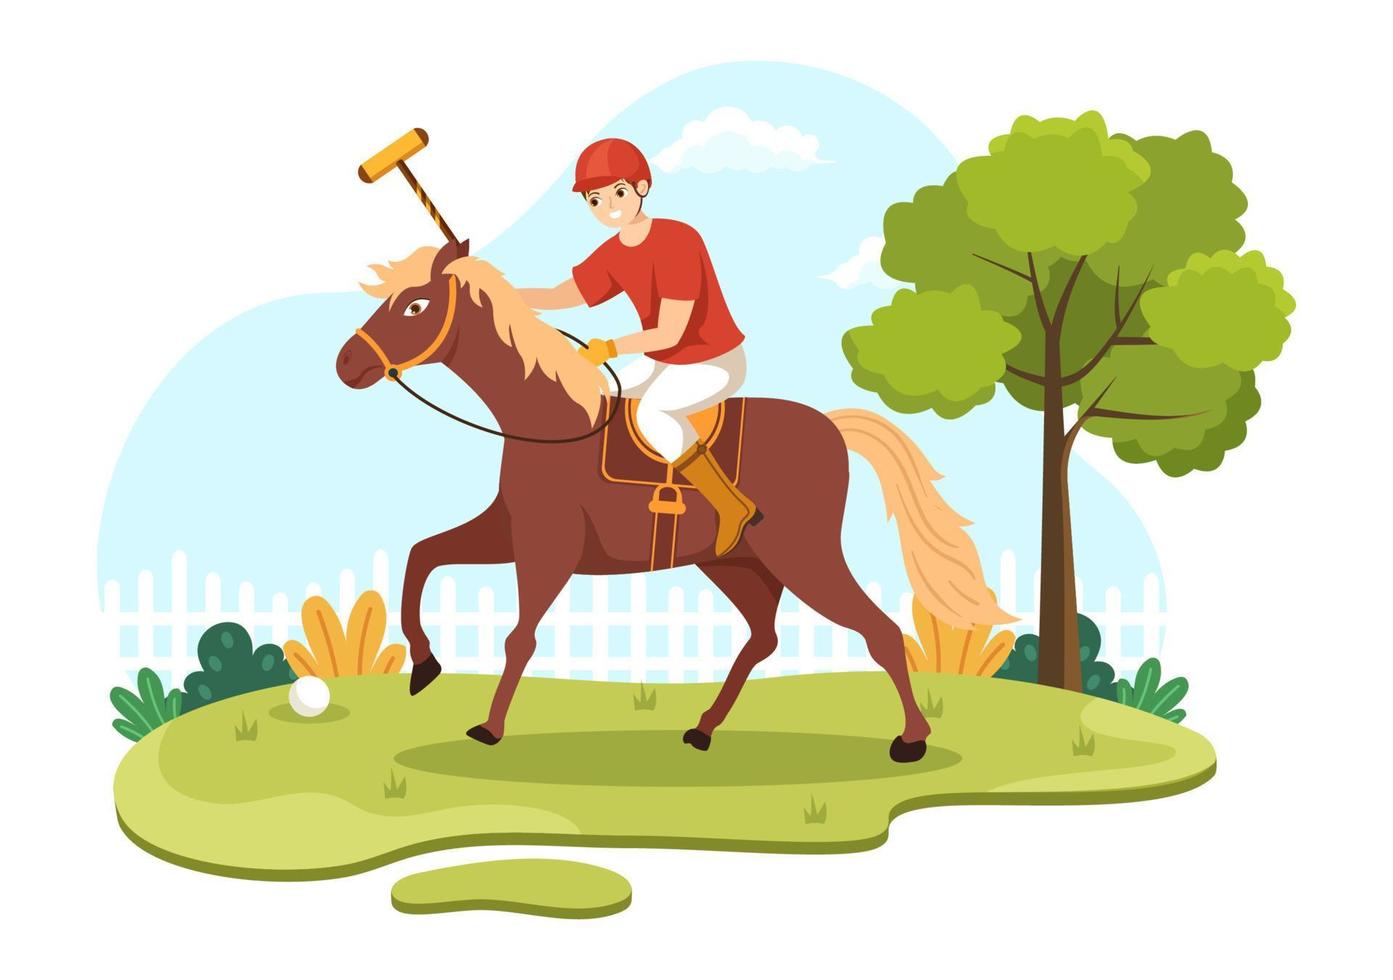 polo cavallo gli sport con giocatore equitazione cavallo e Tenere bastone uso attrezzatura impostato nel piatto cartone animato manifesto mano disegnato modello illustrazione vettore